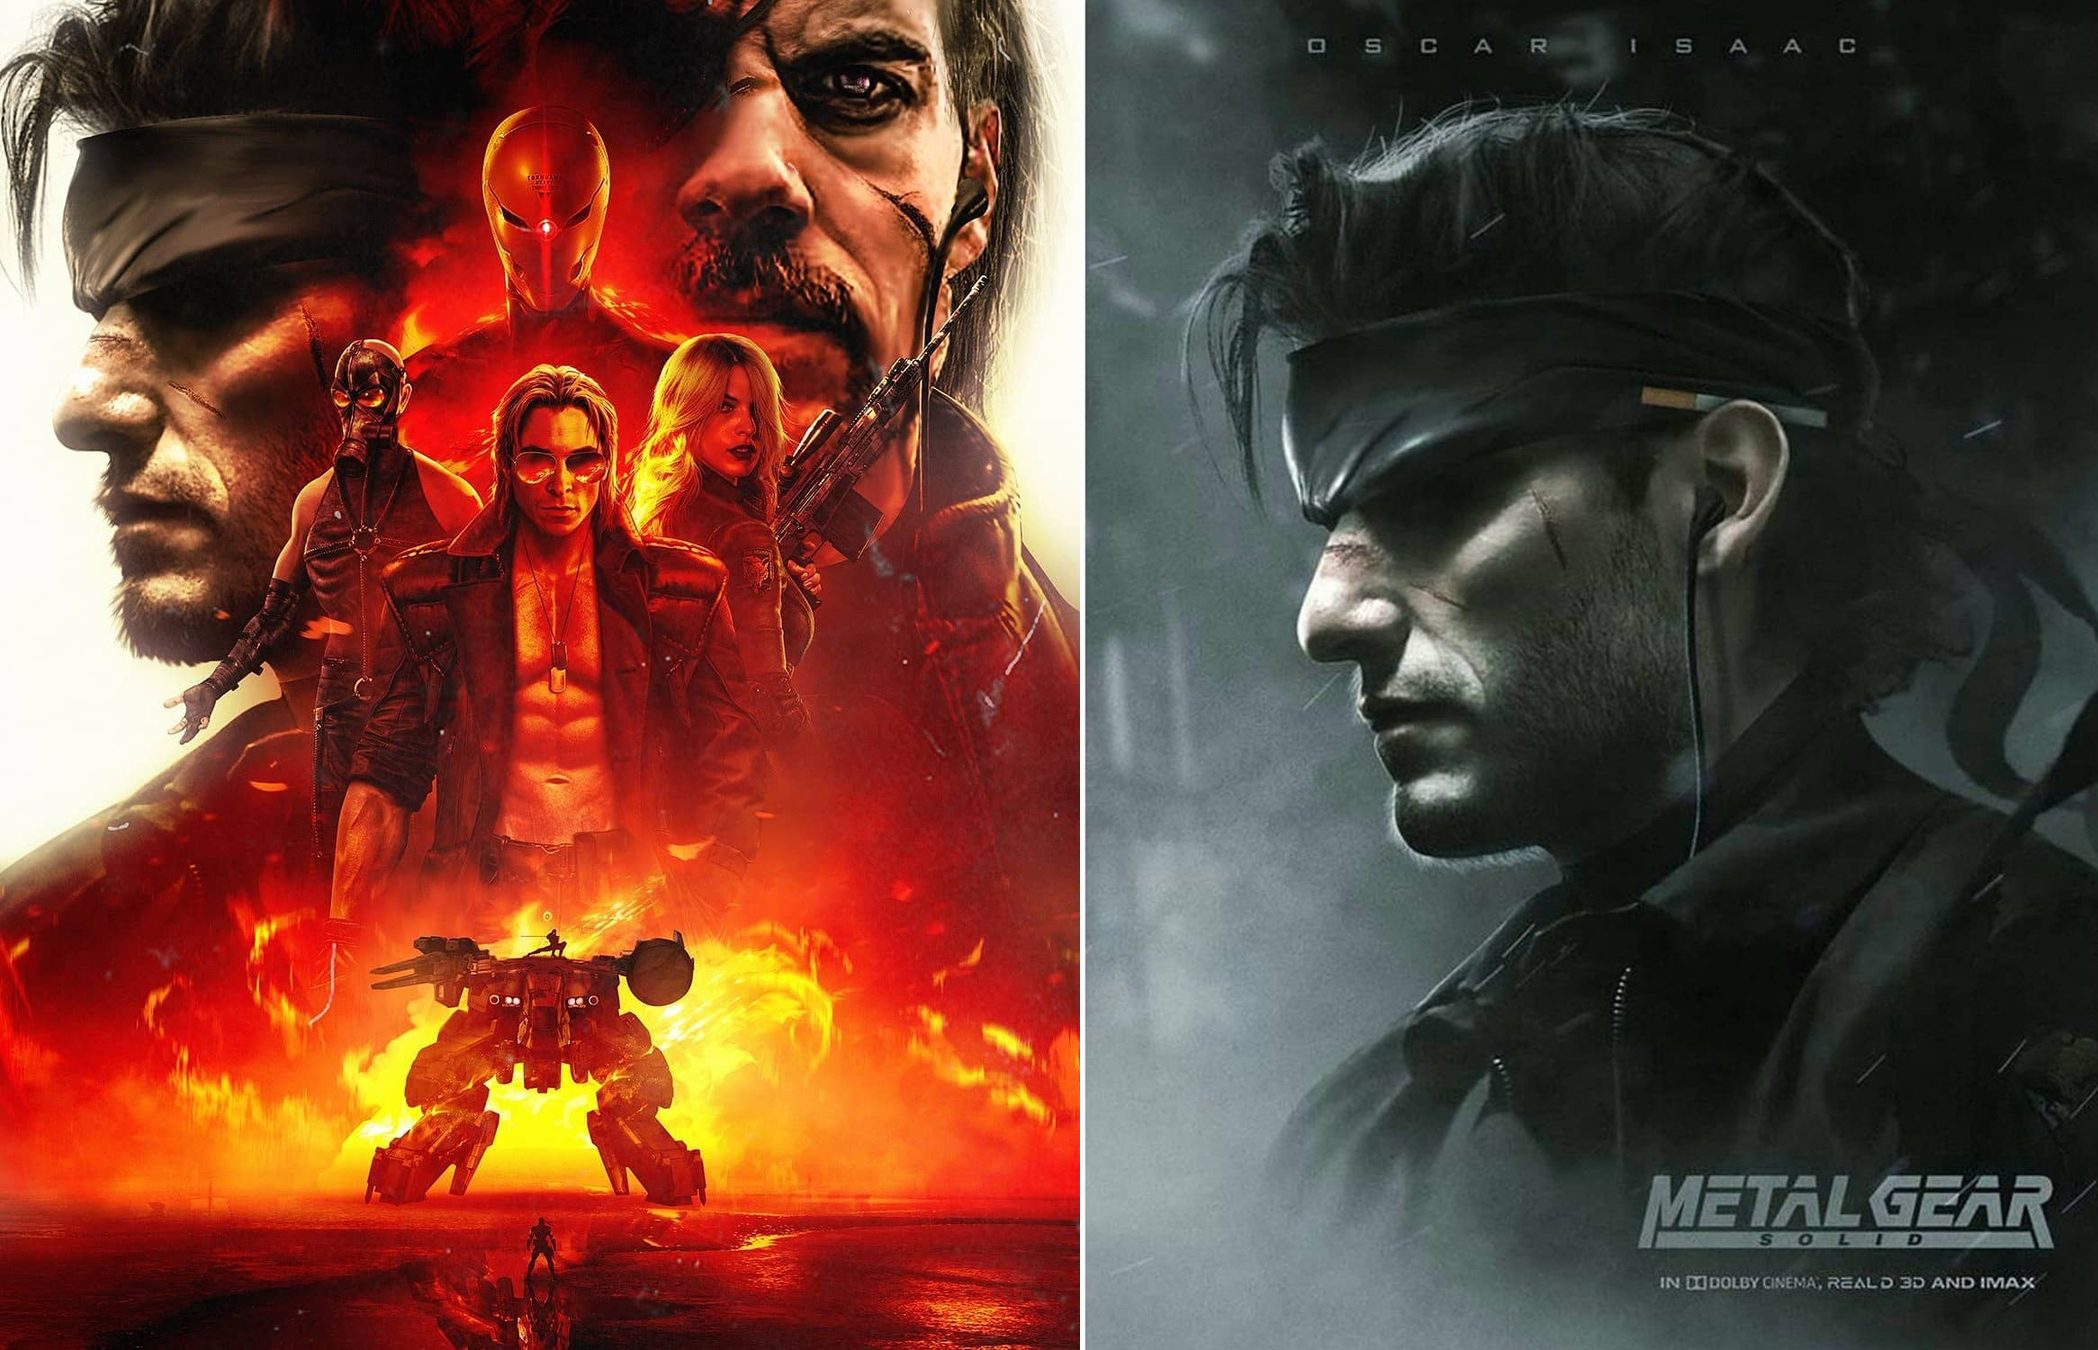 Sony sắp ra mắt bom tấn điện ảnh Metal Gear Solid, Oscar Isaac sẽ đảm nhiệm vai chính Solid Snake - Ảnh 2.